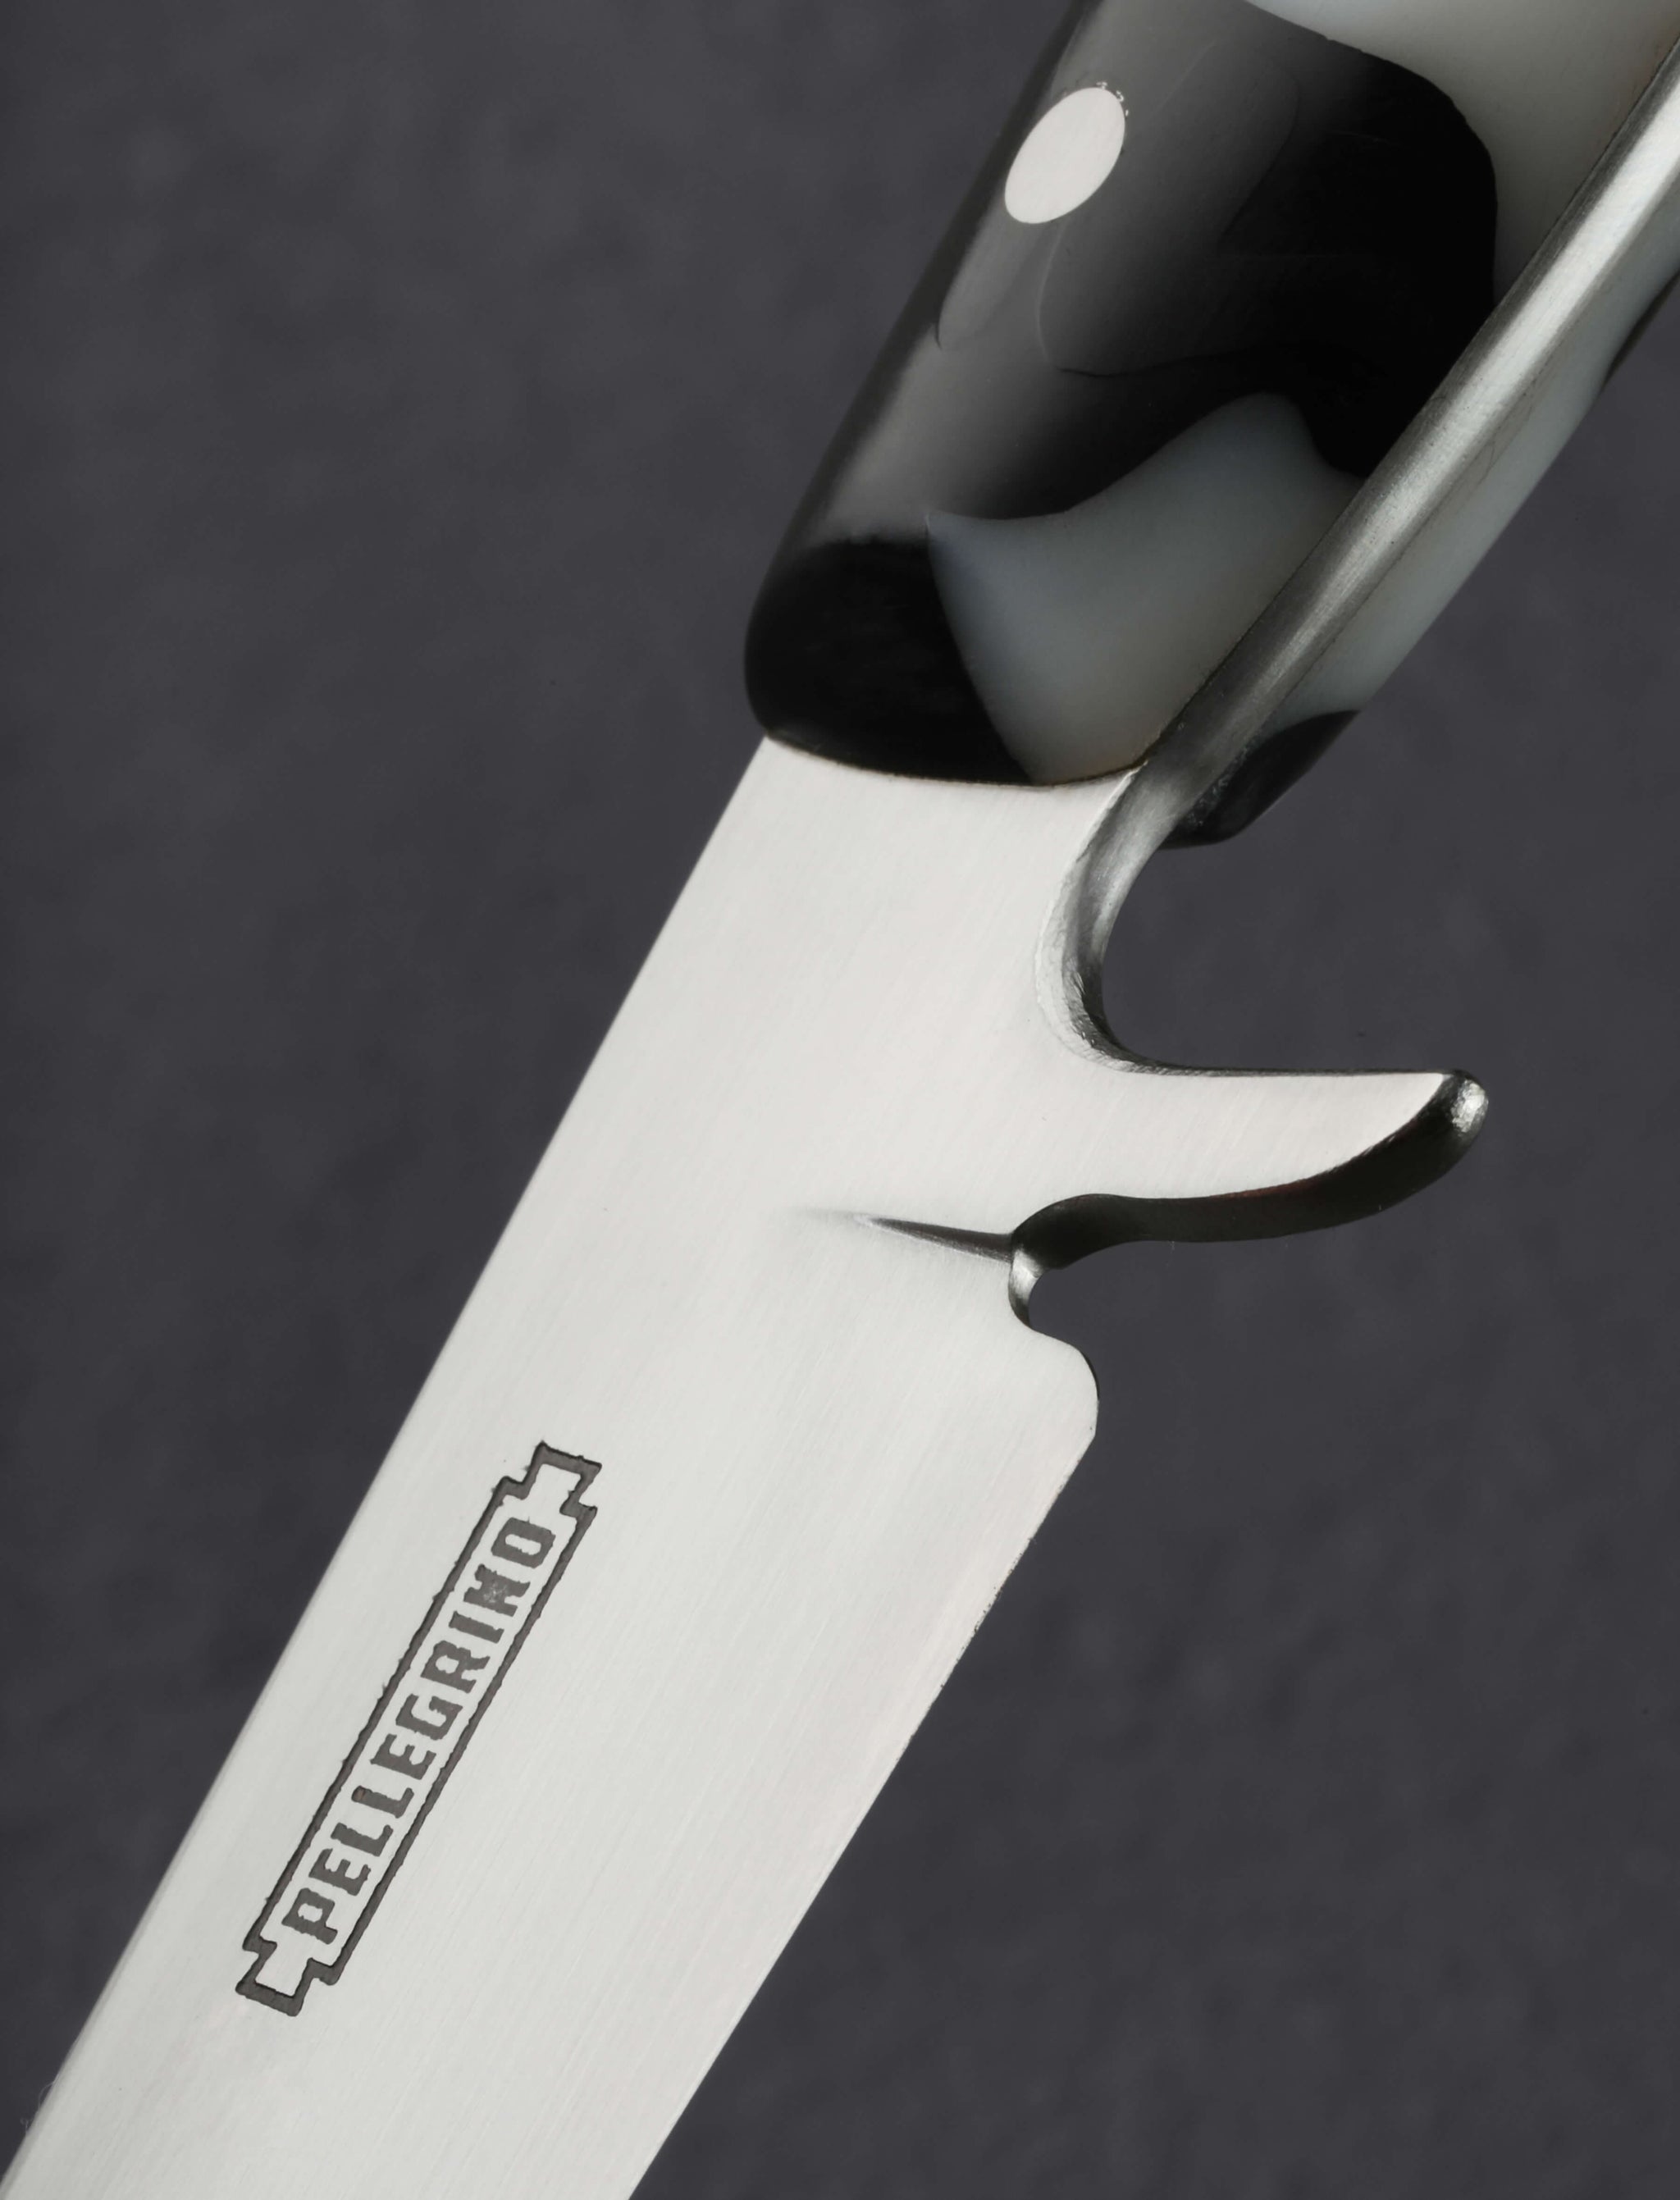 Upcycled Fillet Knife 170mm